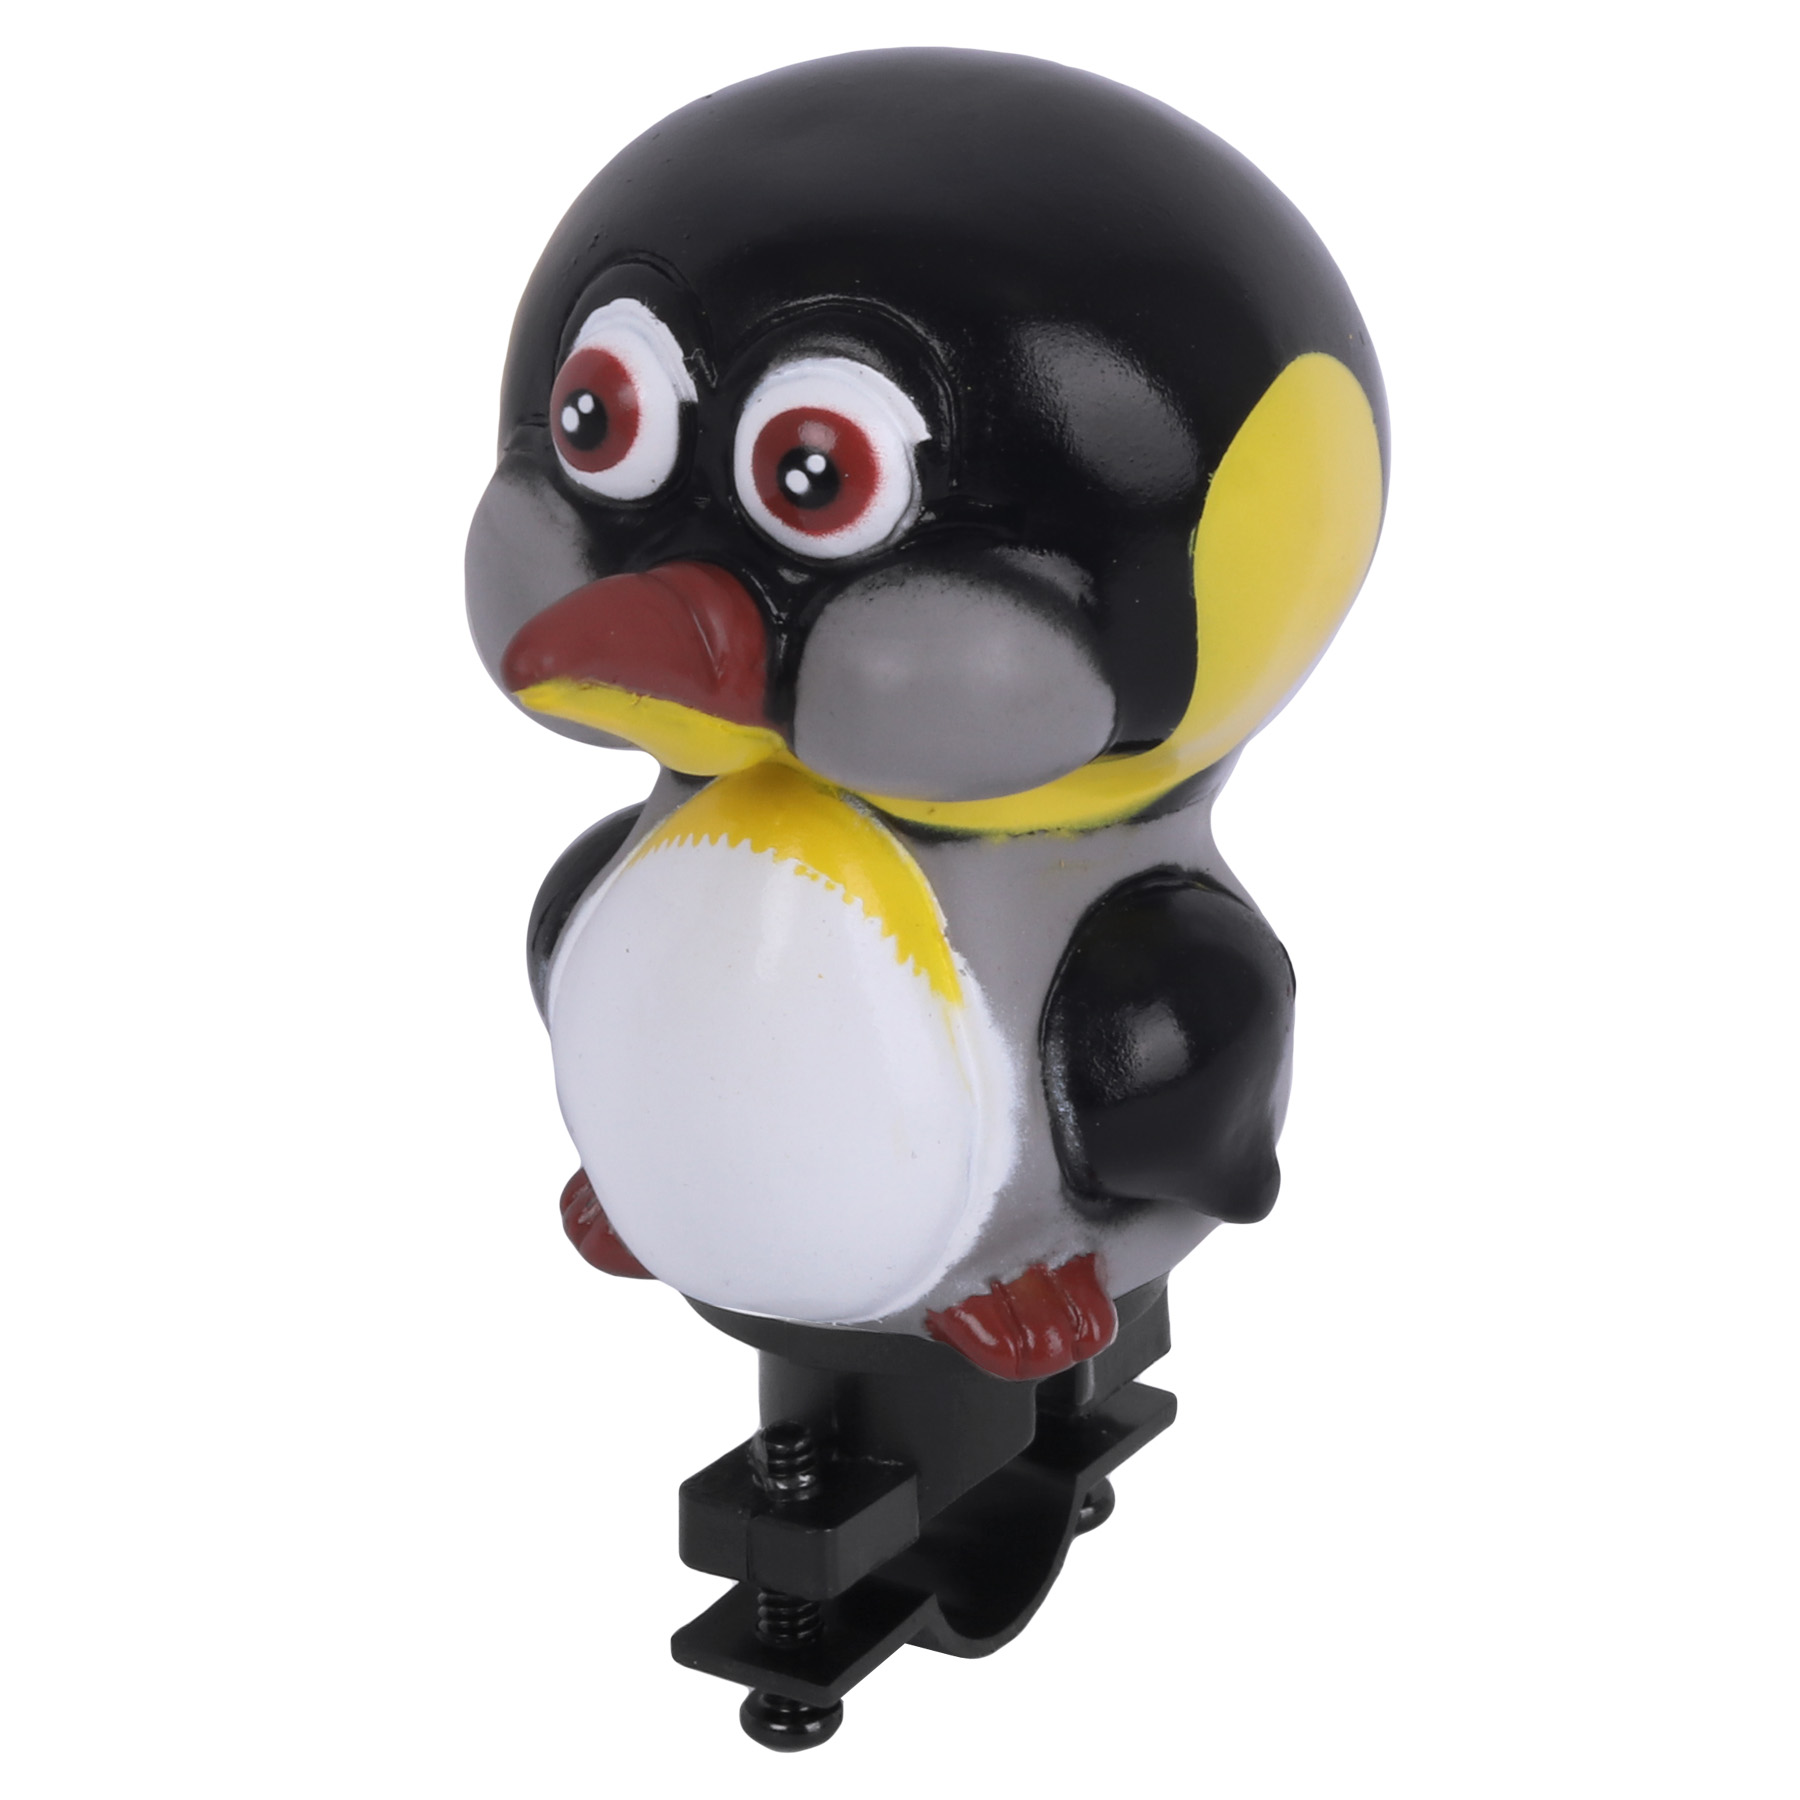 Produktbild von Funny Horn - Figurenhupe Tiere - Pinguin